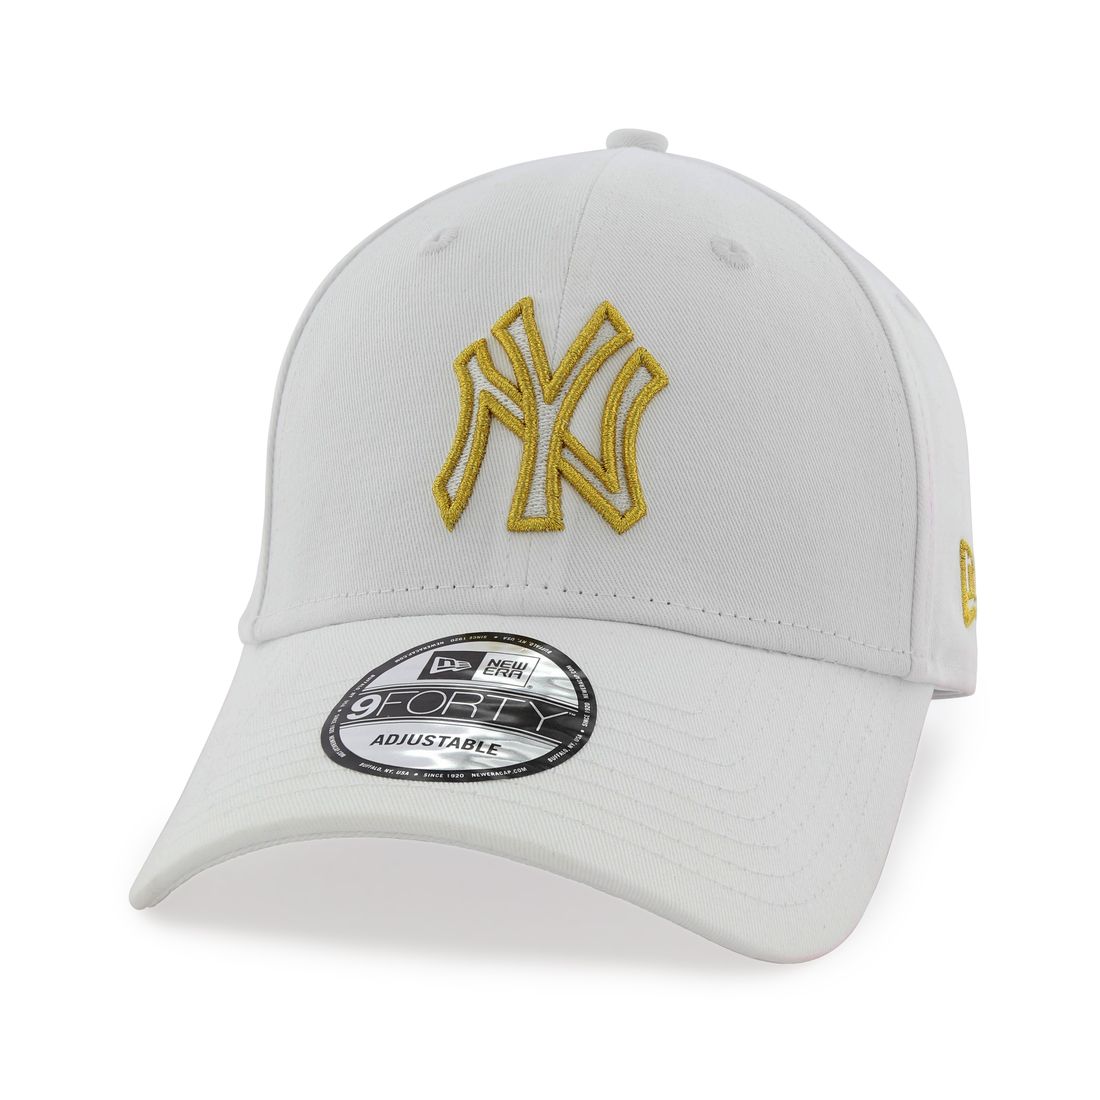 قبعة للرجال تحمل شعار معدني لفريق يانكيز نيويورك من نيو إيرا لون أبيض أوبتيك